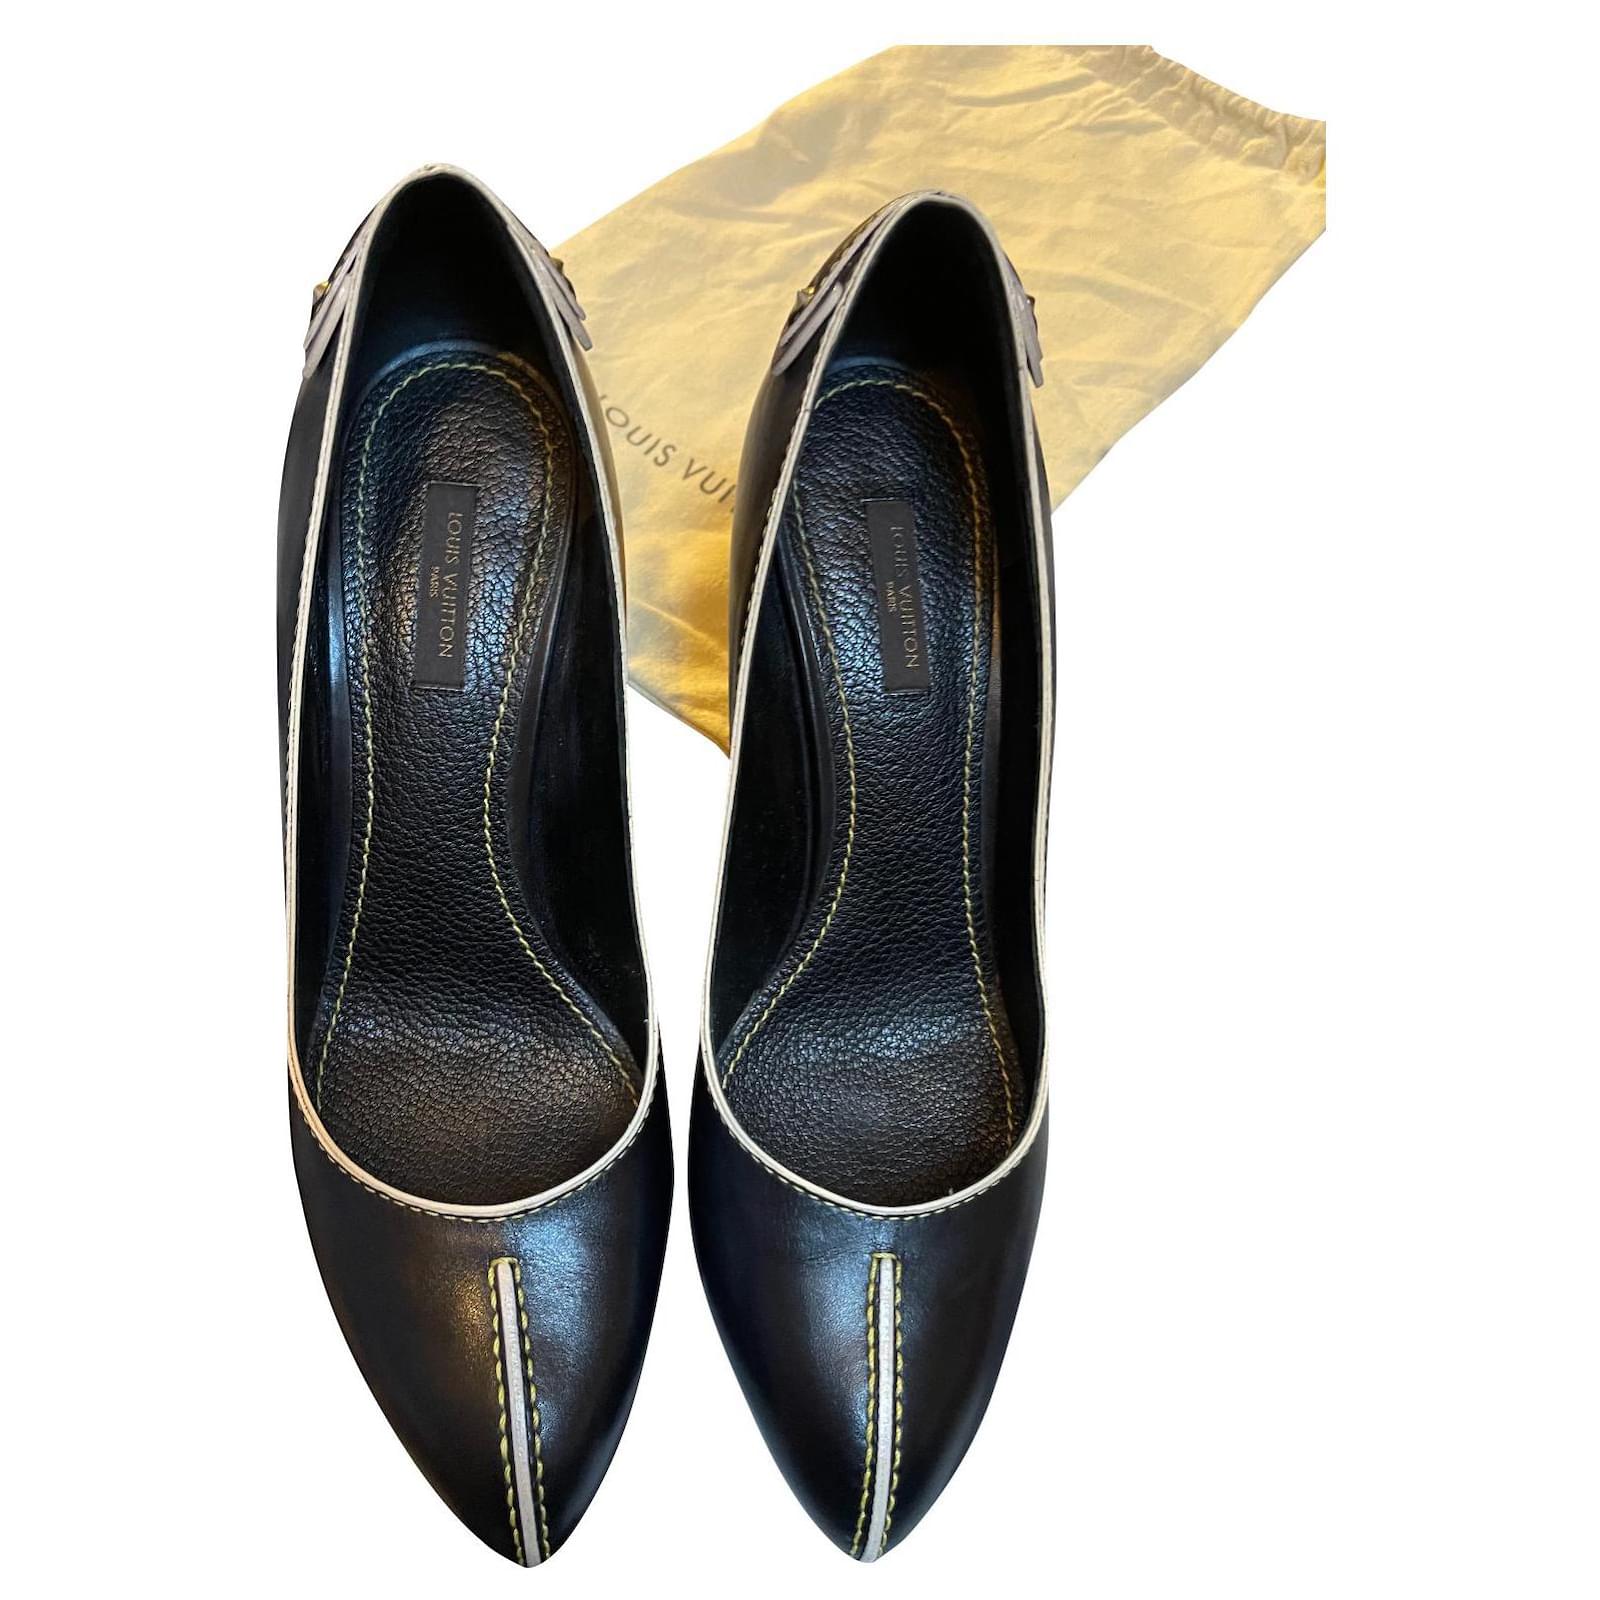 Louis Vuitton Pre-owned Women's Leather Heels - Beige - EU 38.5